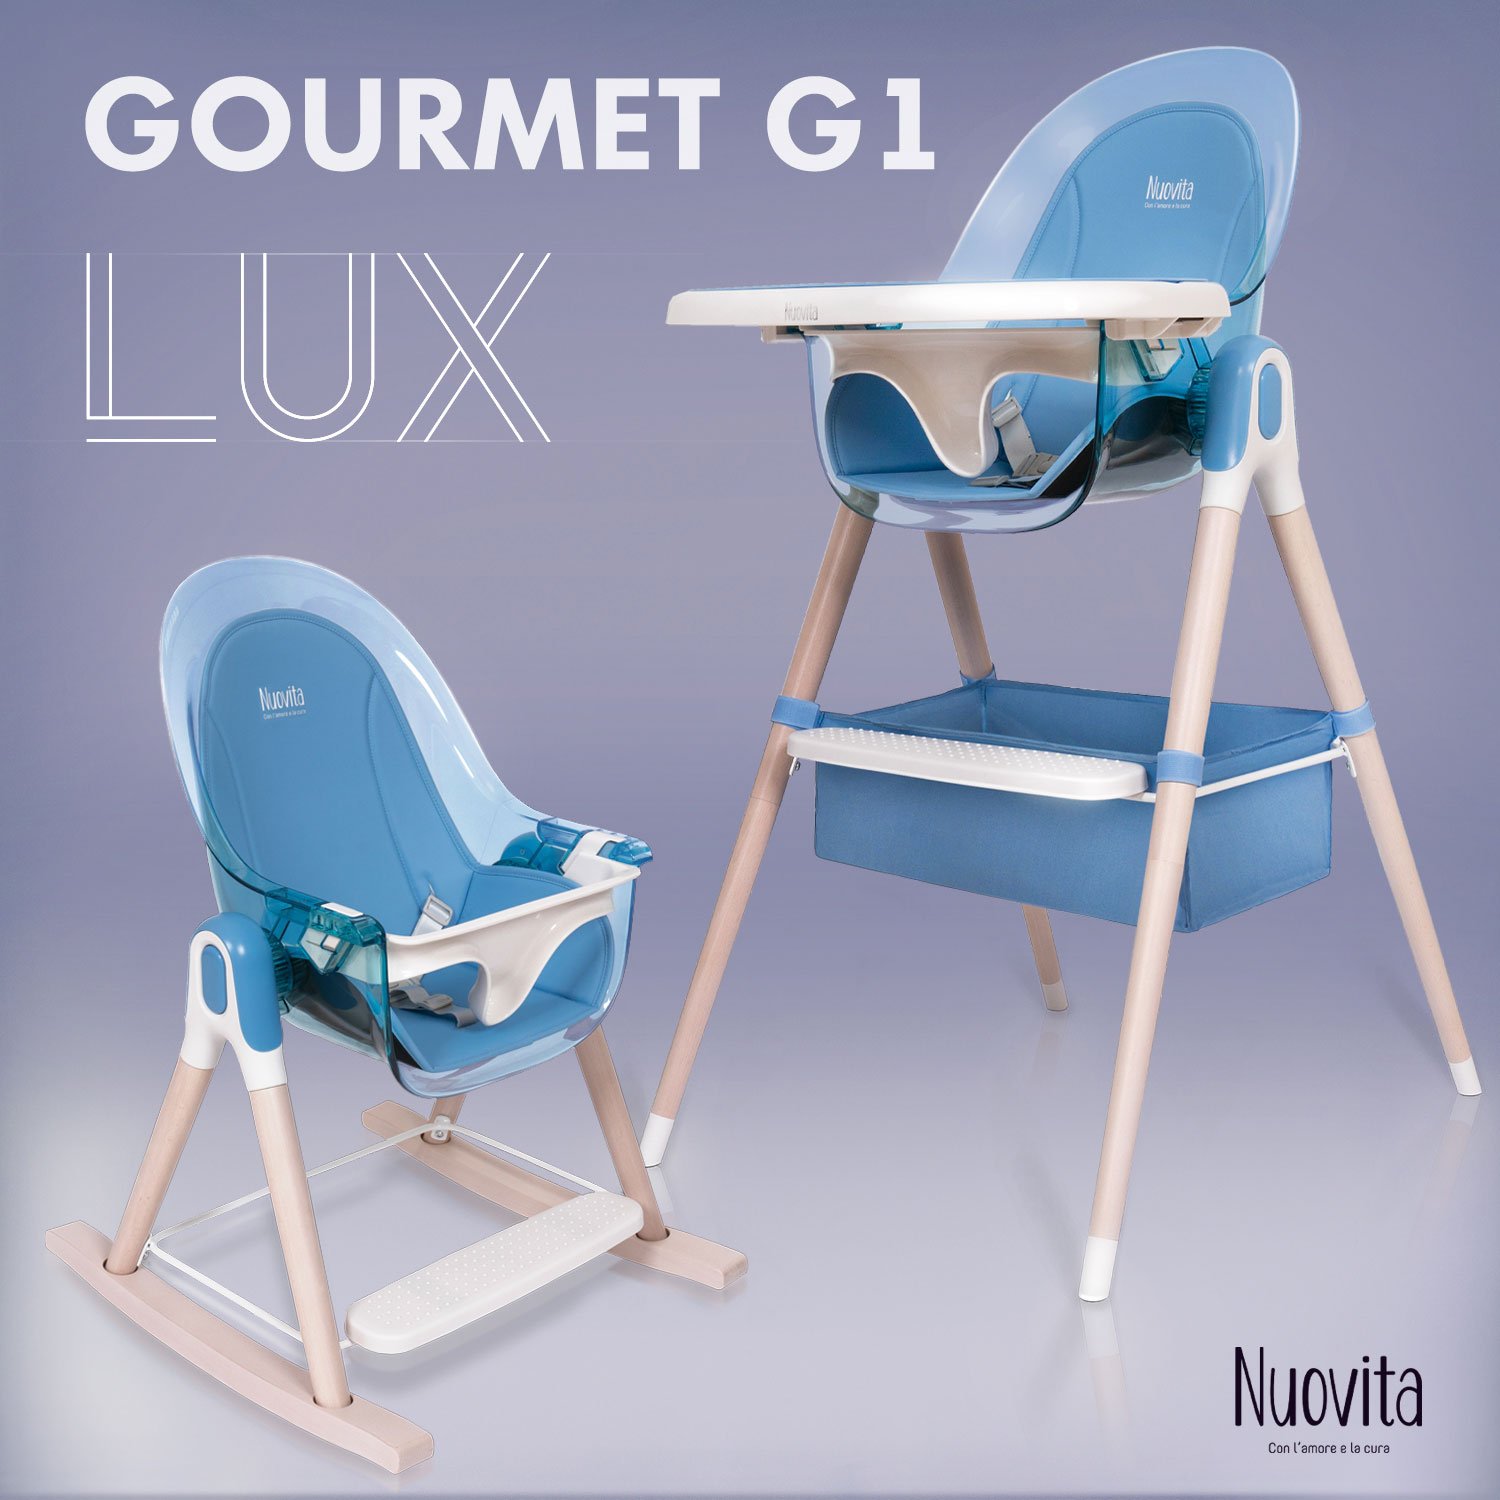 Стульчик для кормления 3 в 1 Nuovita Gourmet G1 Lux (Blu/Голубой) стульчик для кормления nuovita grande blu голубой